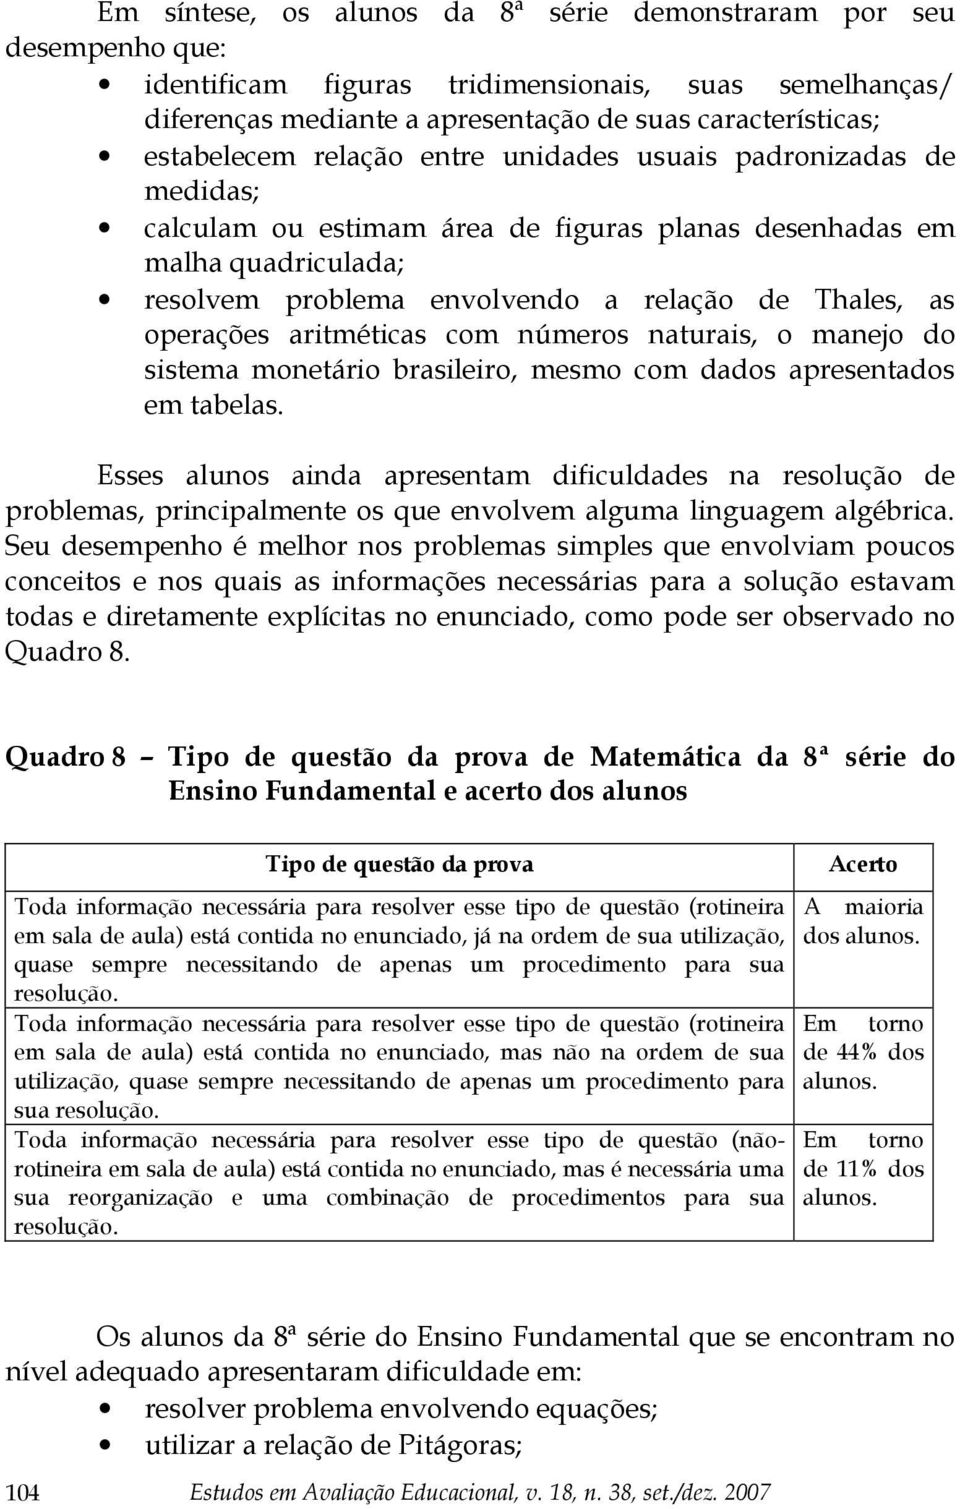 aritméticas com números naturais, o manejo do sistema monetário brasileiro, mesmo com dados apresentados em tabelas.